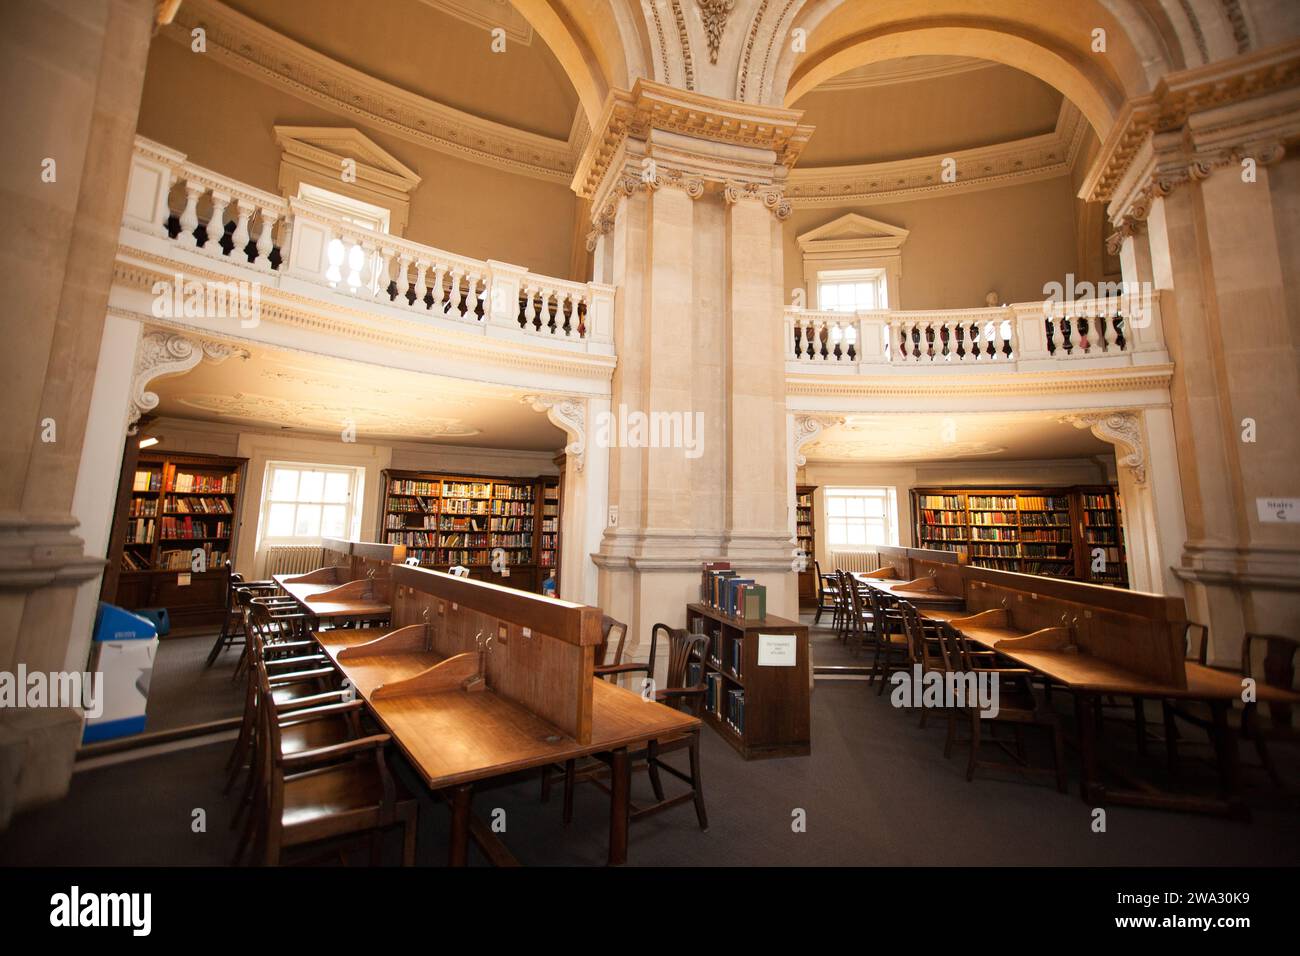 All'interno della Radcliffe camera Library nell'Oxfordshire, nel Regno Unito Foto Stock